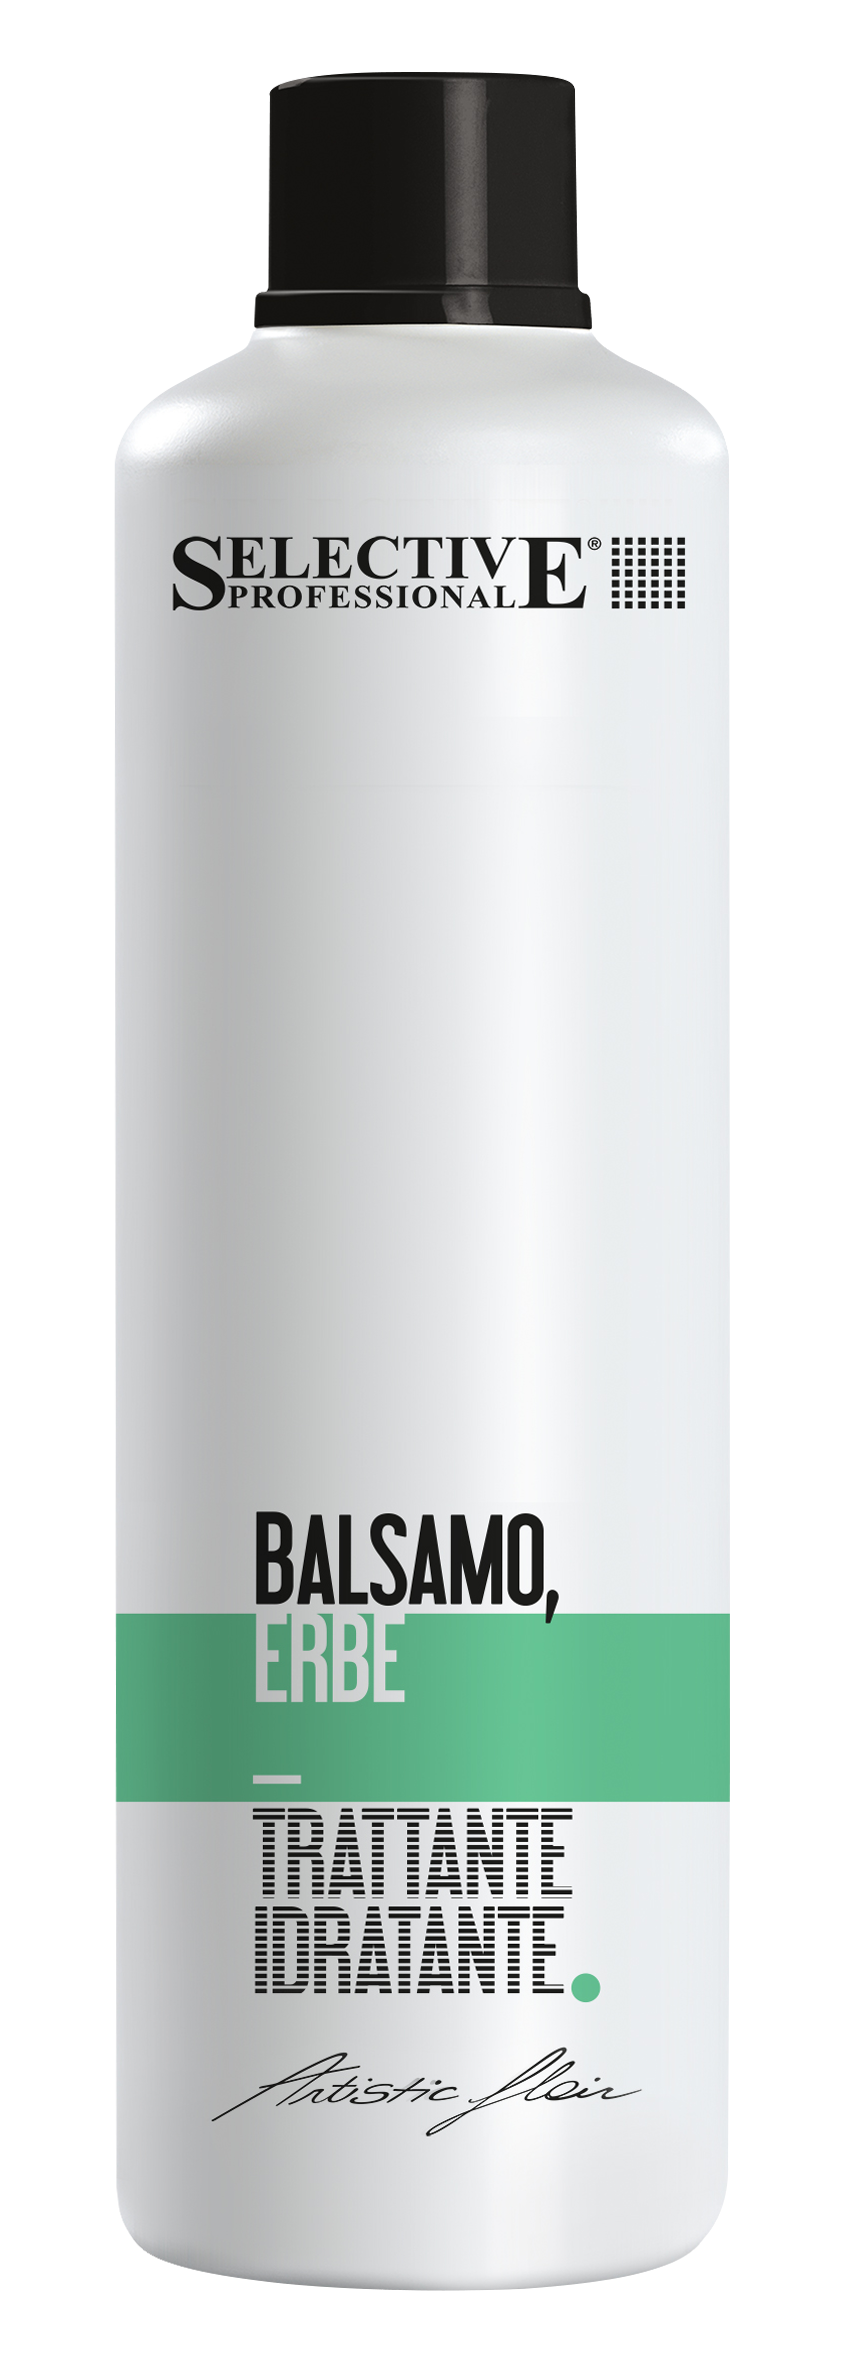 Бальзамы для волос:  SELECTIVE PROFESSIONAL -  Бальзам Травяной для жирных волос  BALSAMO ERBE (1000 мл)